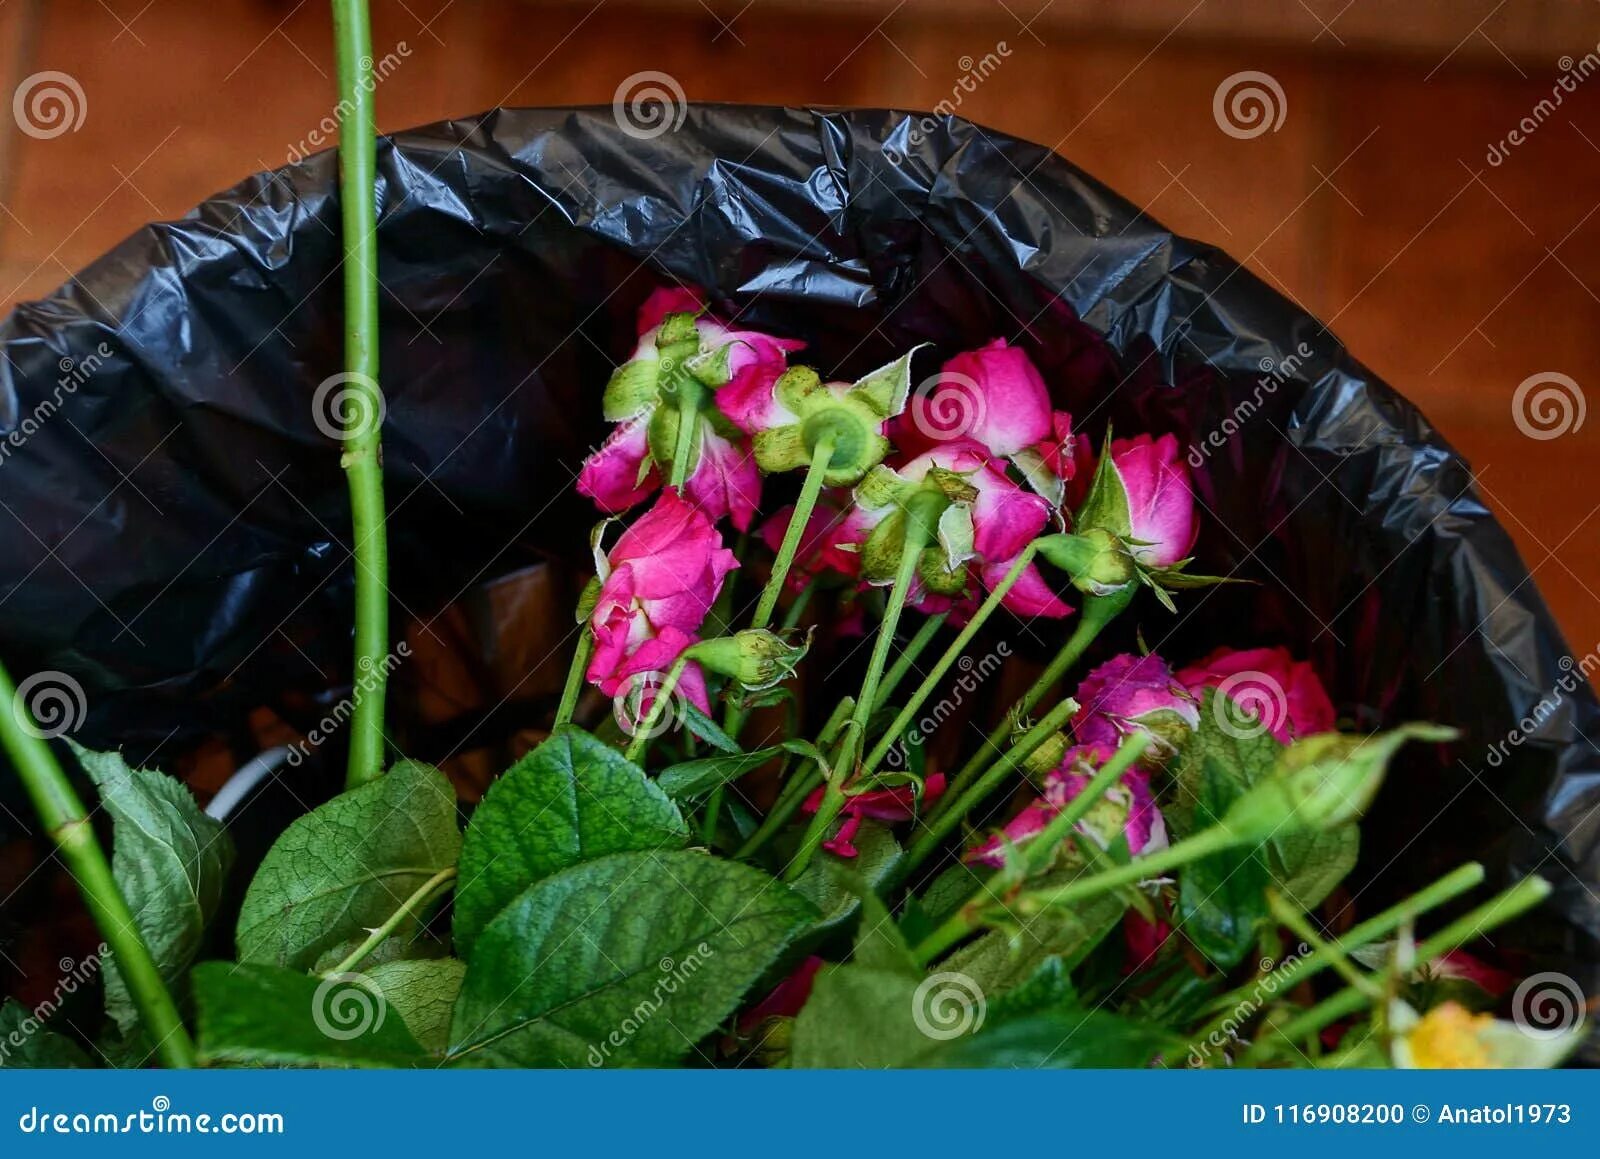 Розы в мусорном ведре. Букет в мусорном ведре. Розы в помойном ведре. Выброшенный букет.